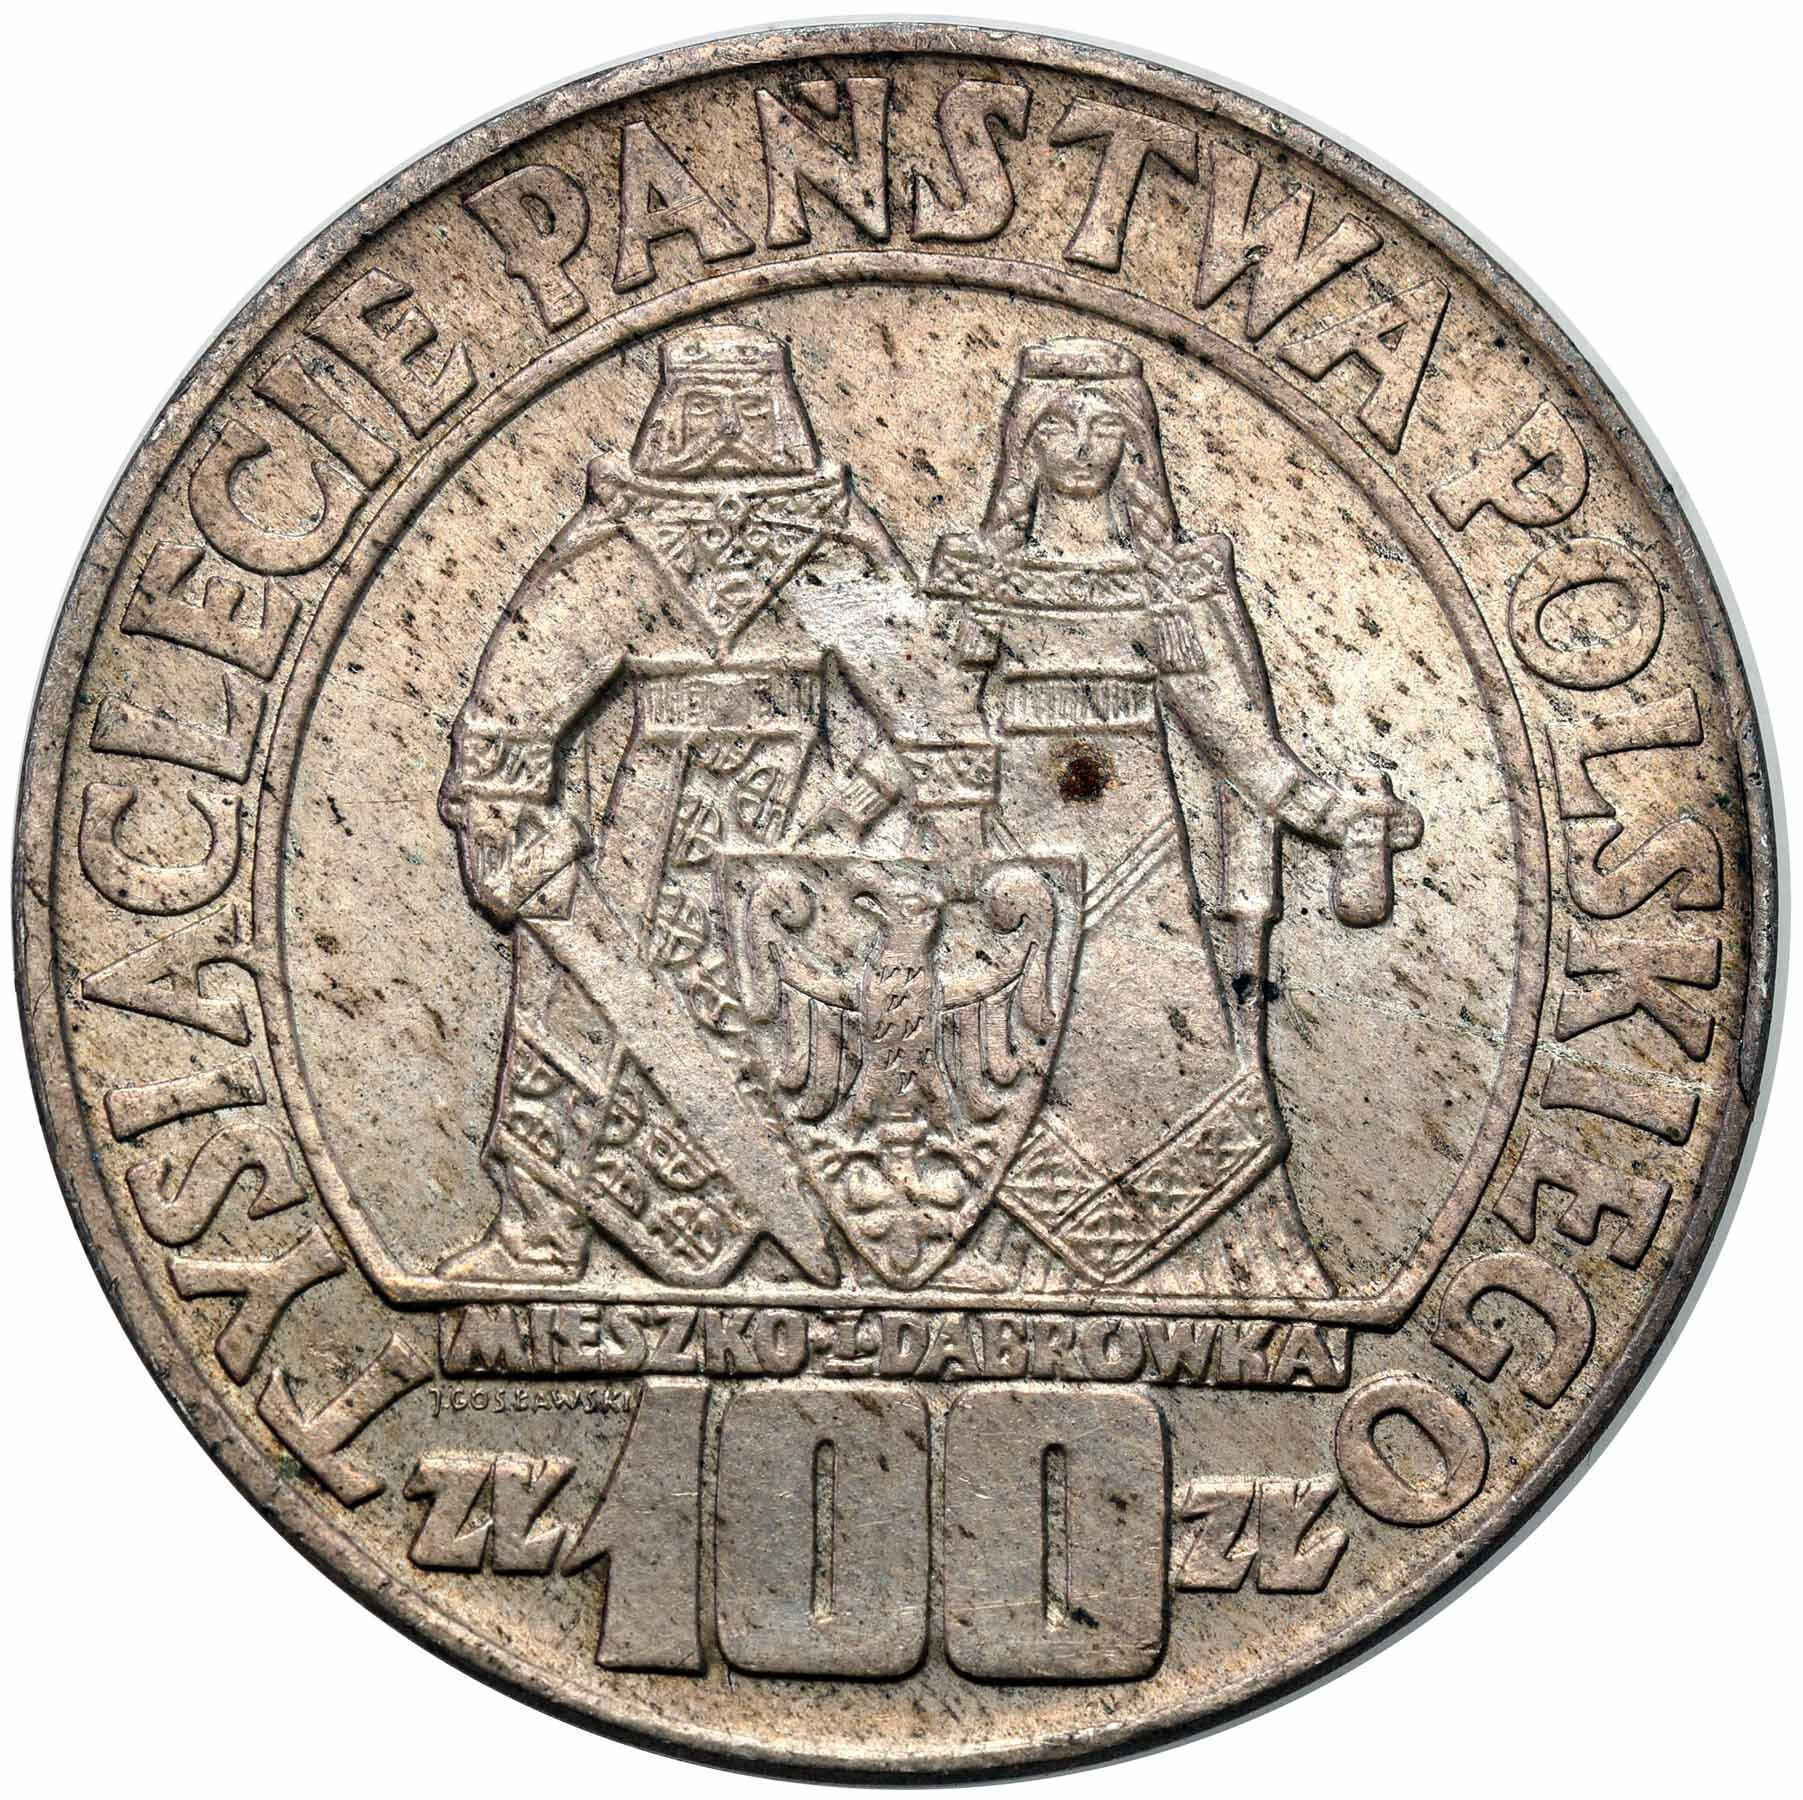 100 złotych 1966 Mieszko i Dąbrówka – Millenium 